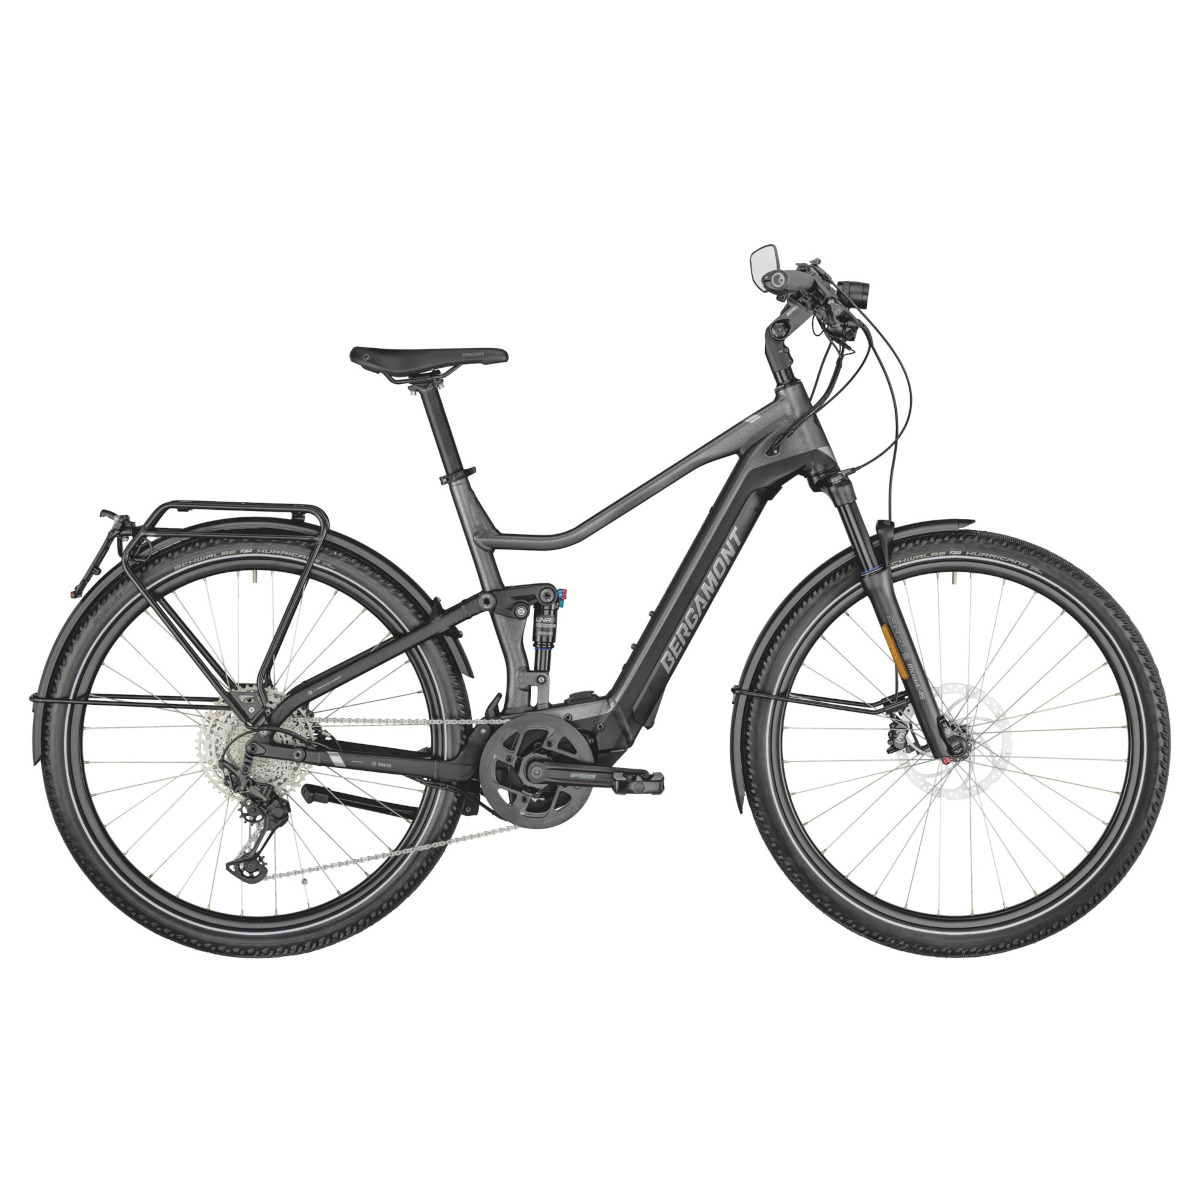 Picture of Bergamont E-HORIZON FS ELITE SPEED - 45 km/h Trekking E-Bike - 2022 - flaky silver